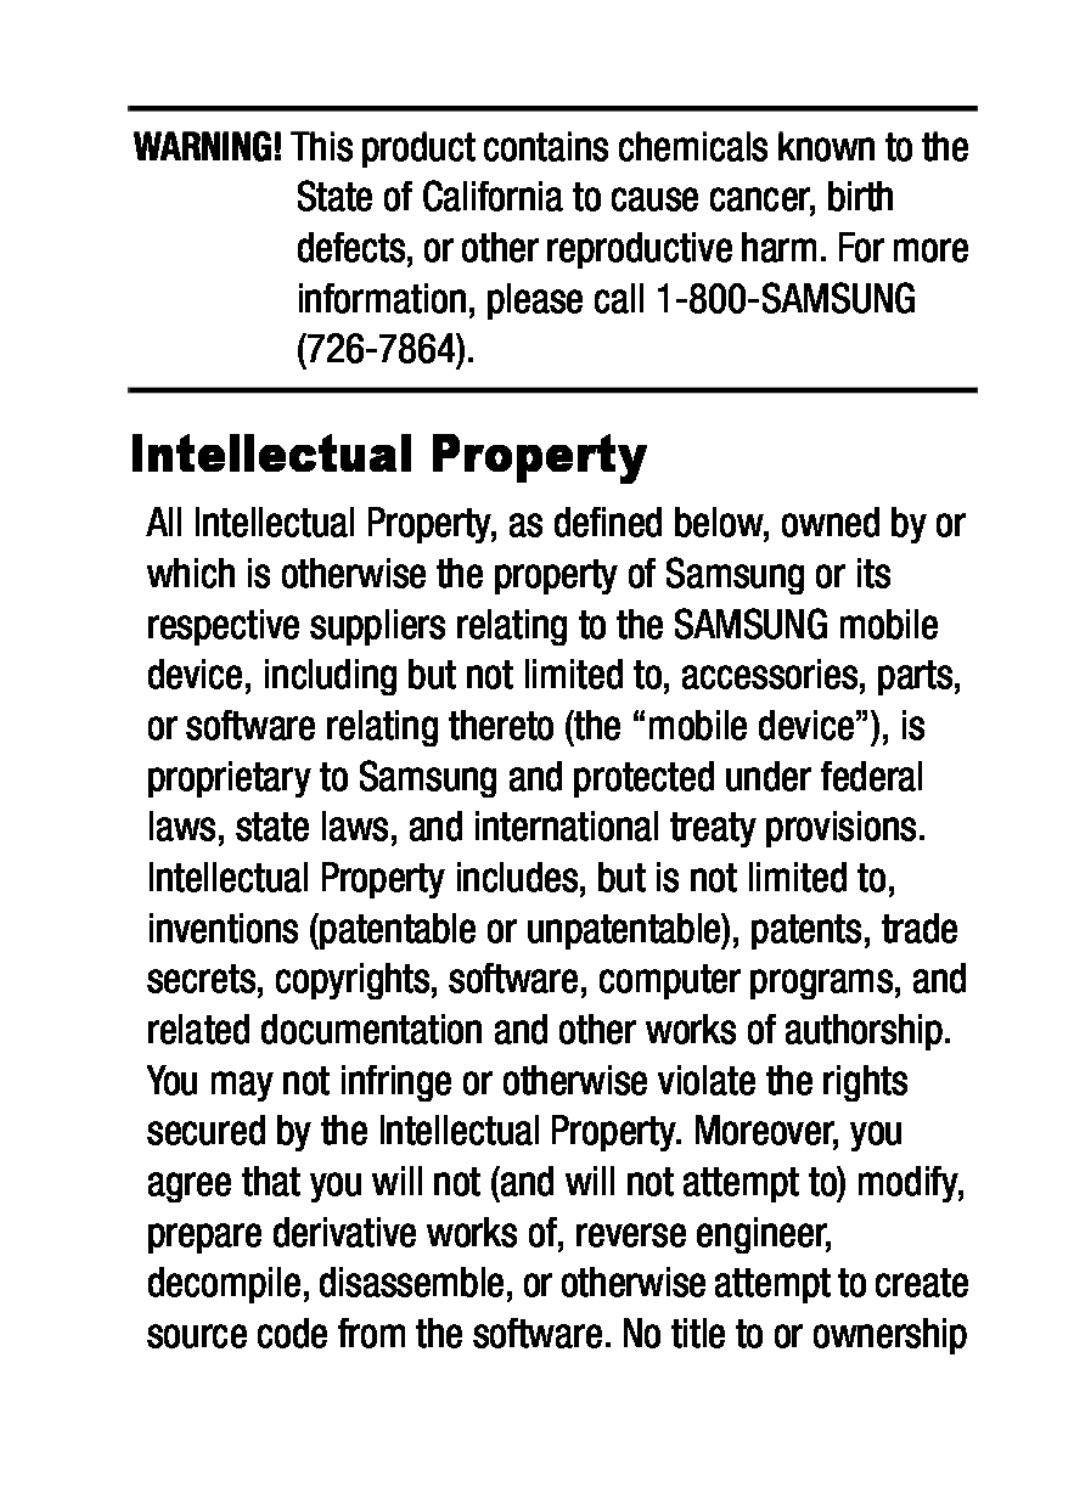 Intellectual Property Galaxy Tab E 8.0 Verizon